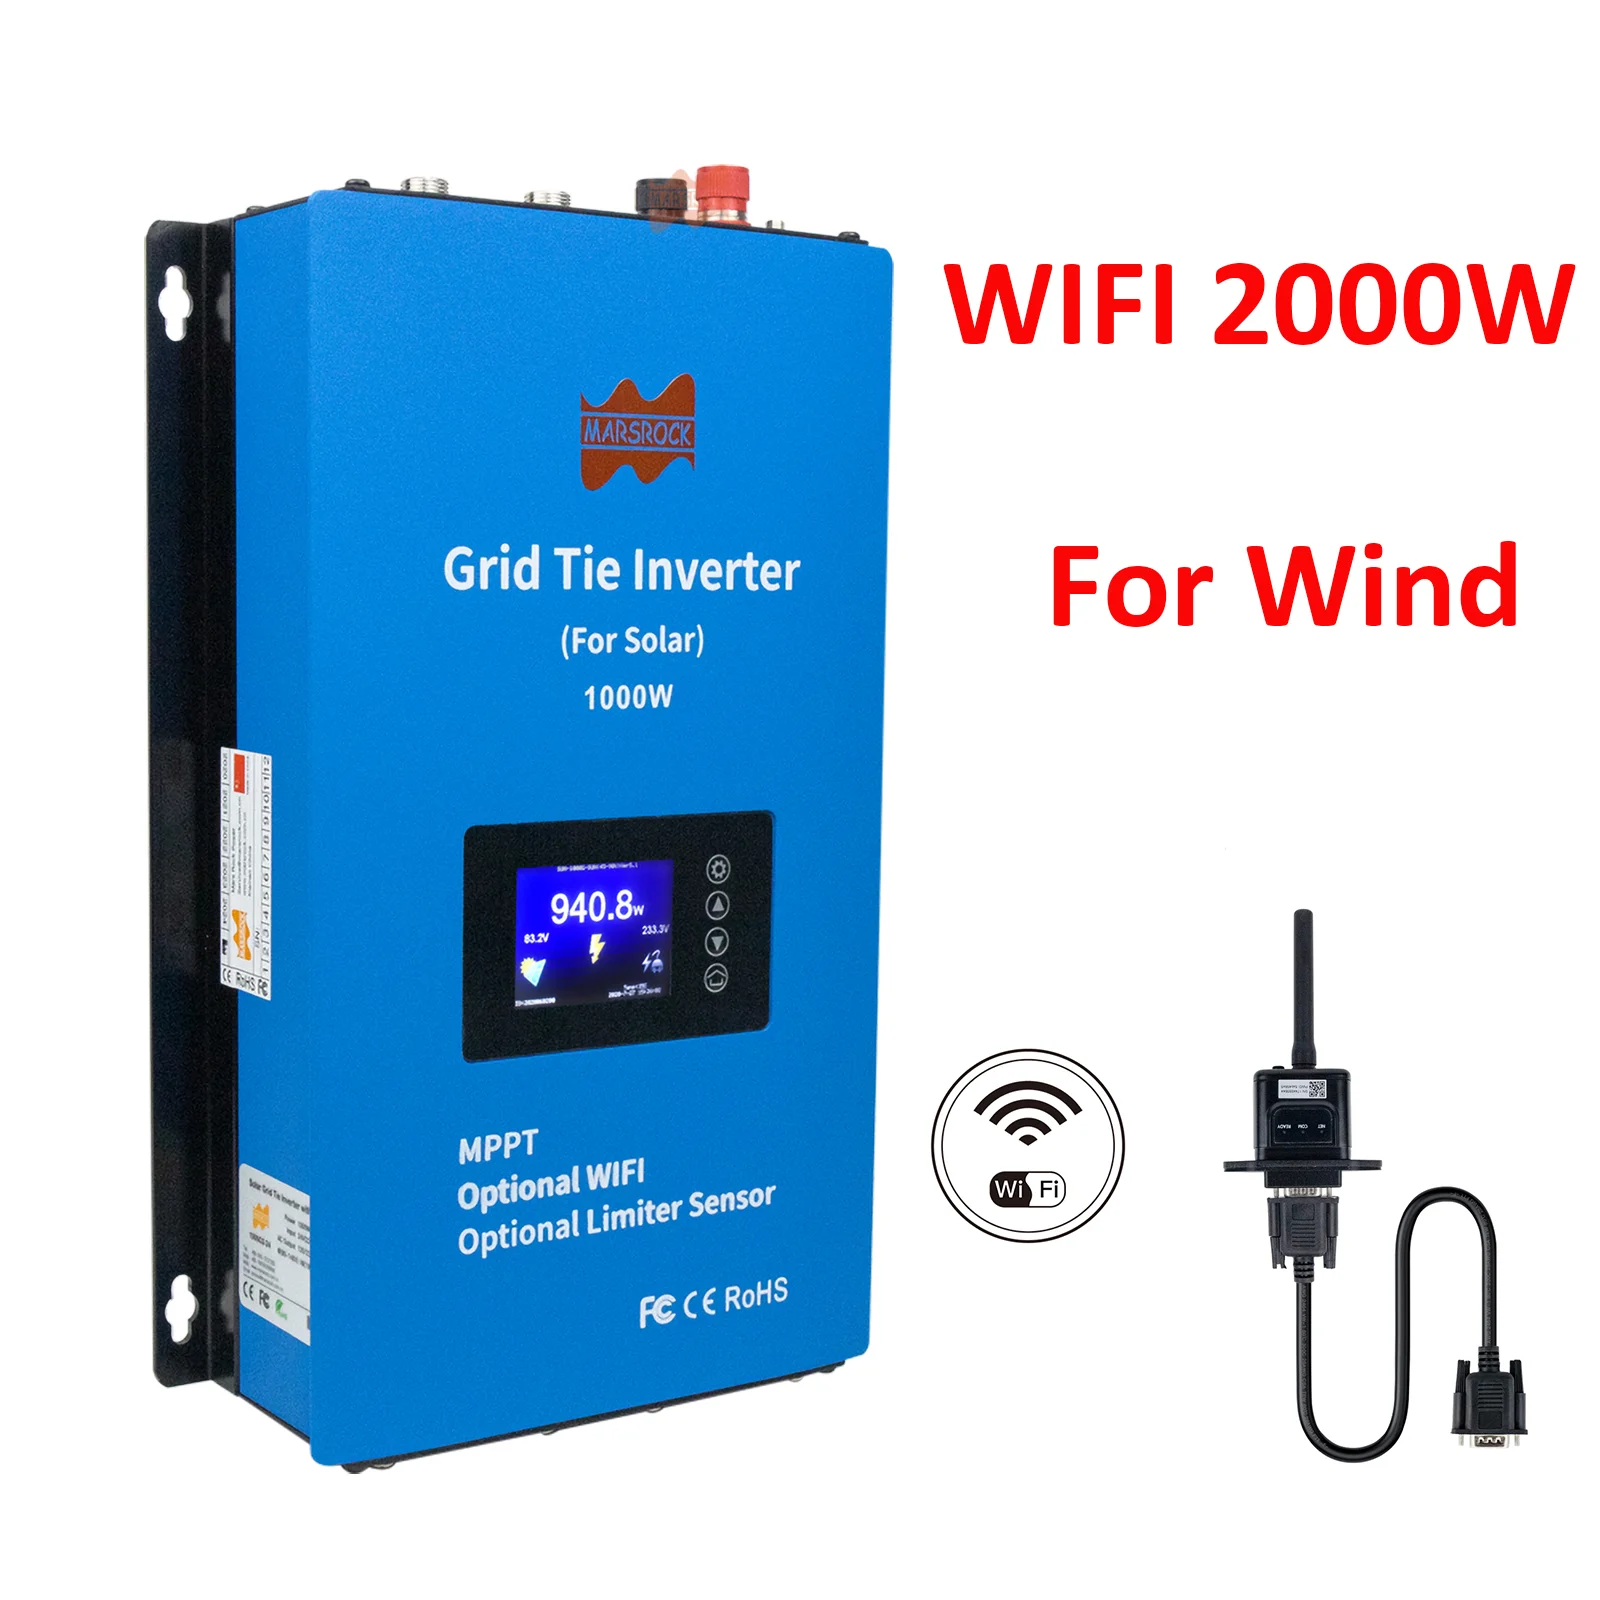 

2000W Wind Power Inverter Grid Tie MPPT Microinverter Limiter Current Sensor 24V/48V AC Pure Sine Wave Converter Optional WIFI